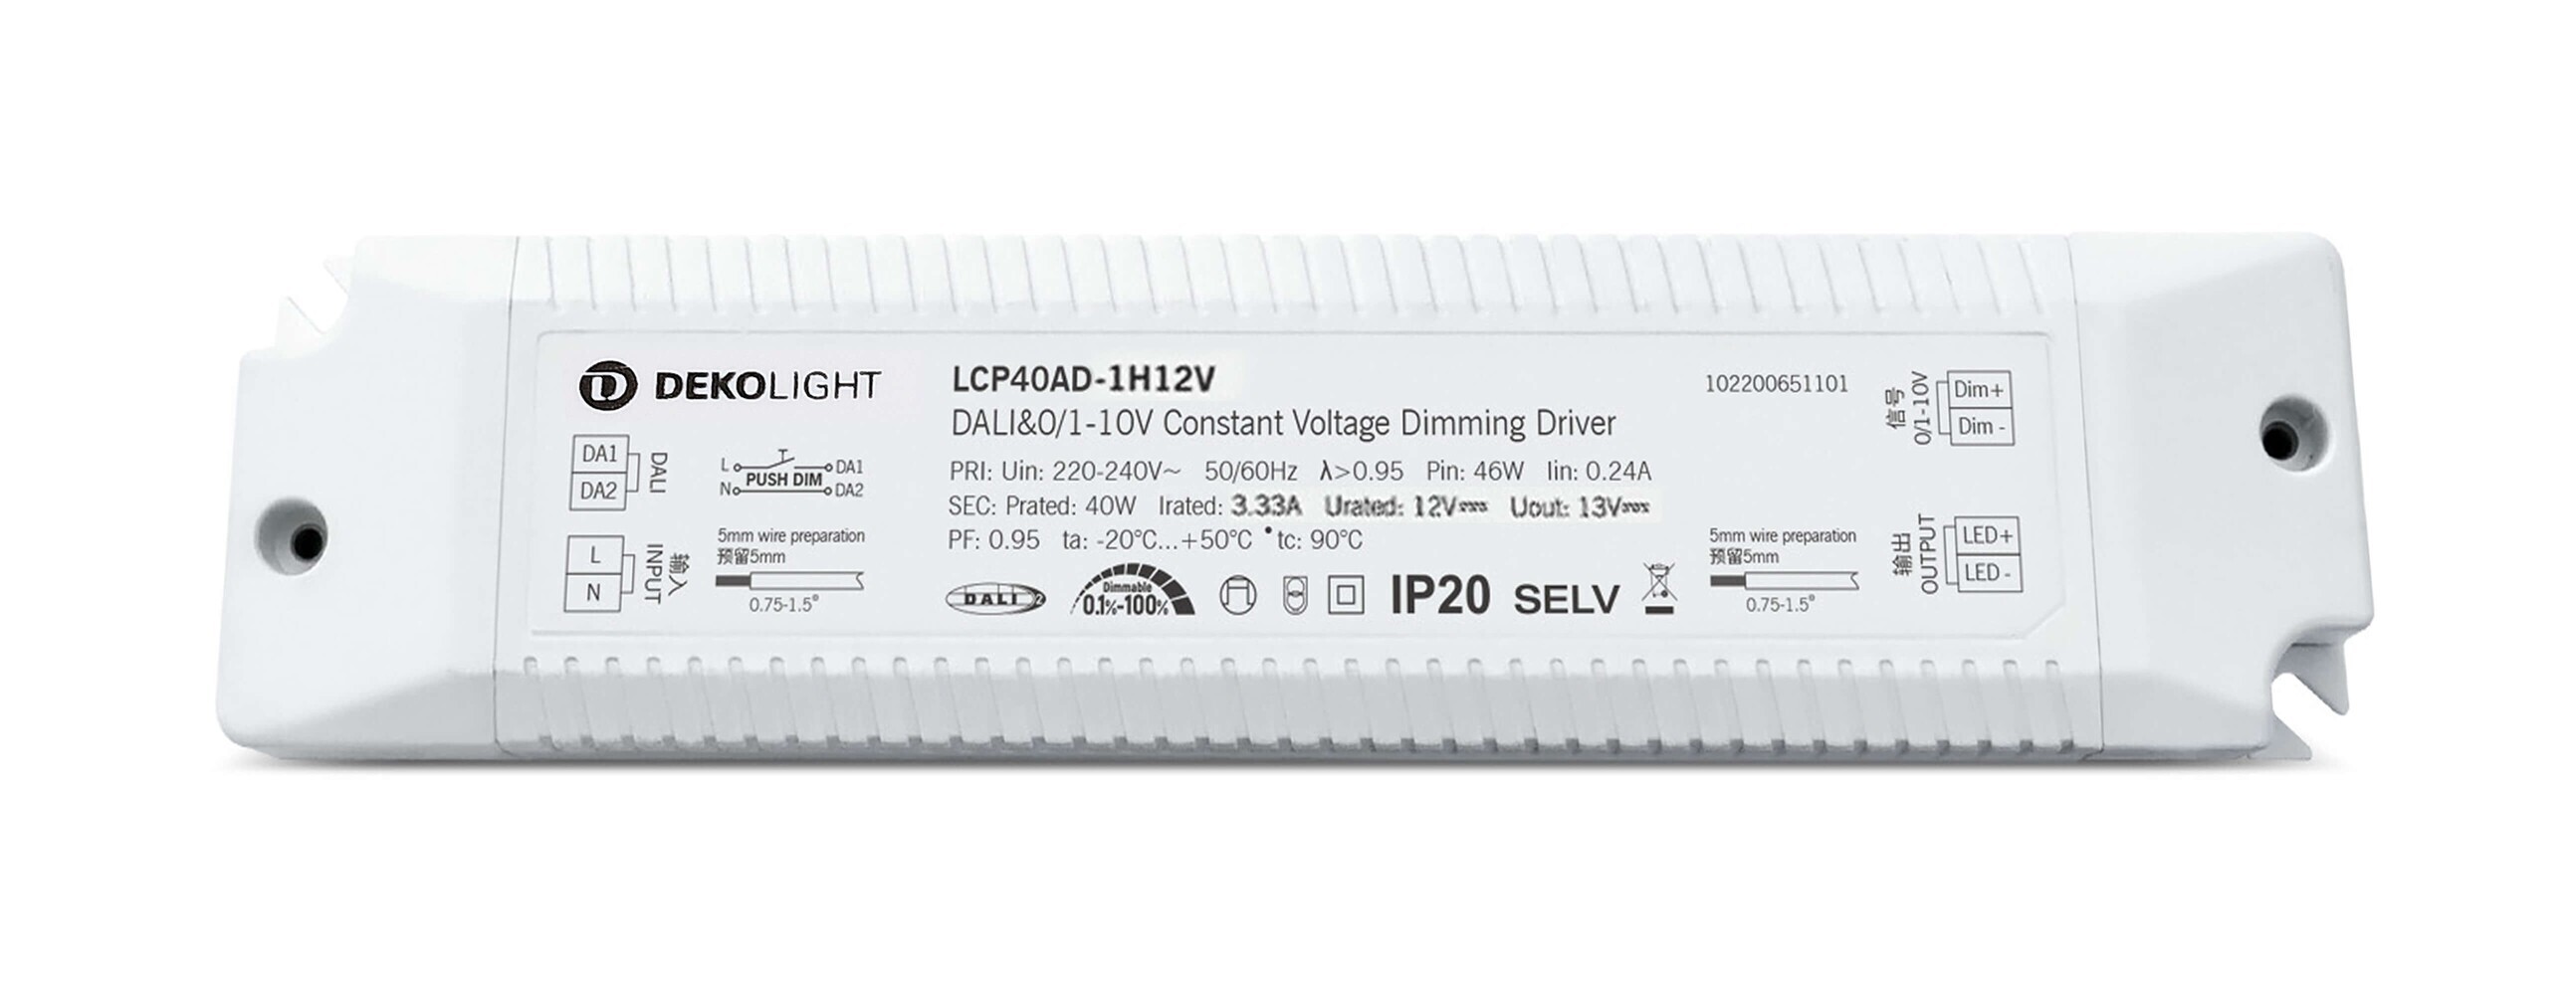 Eindrucksvolles LED Netzgerät von Deko-Light mit beindruckender Dimm-Funktion